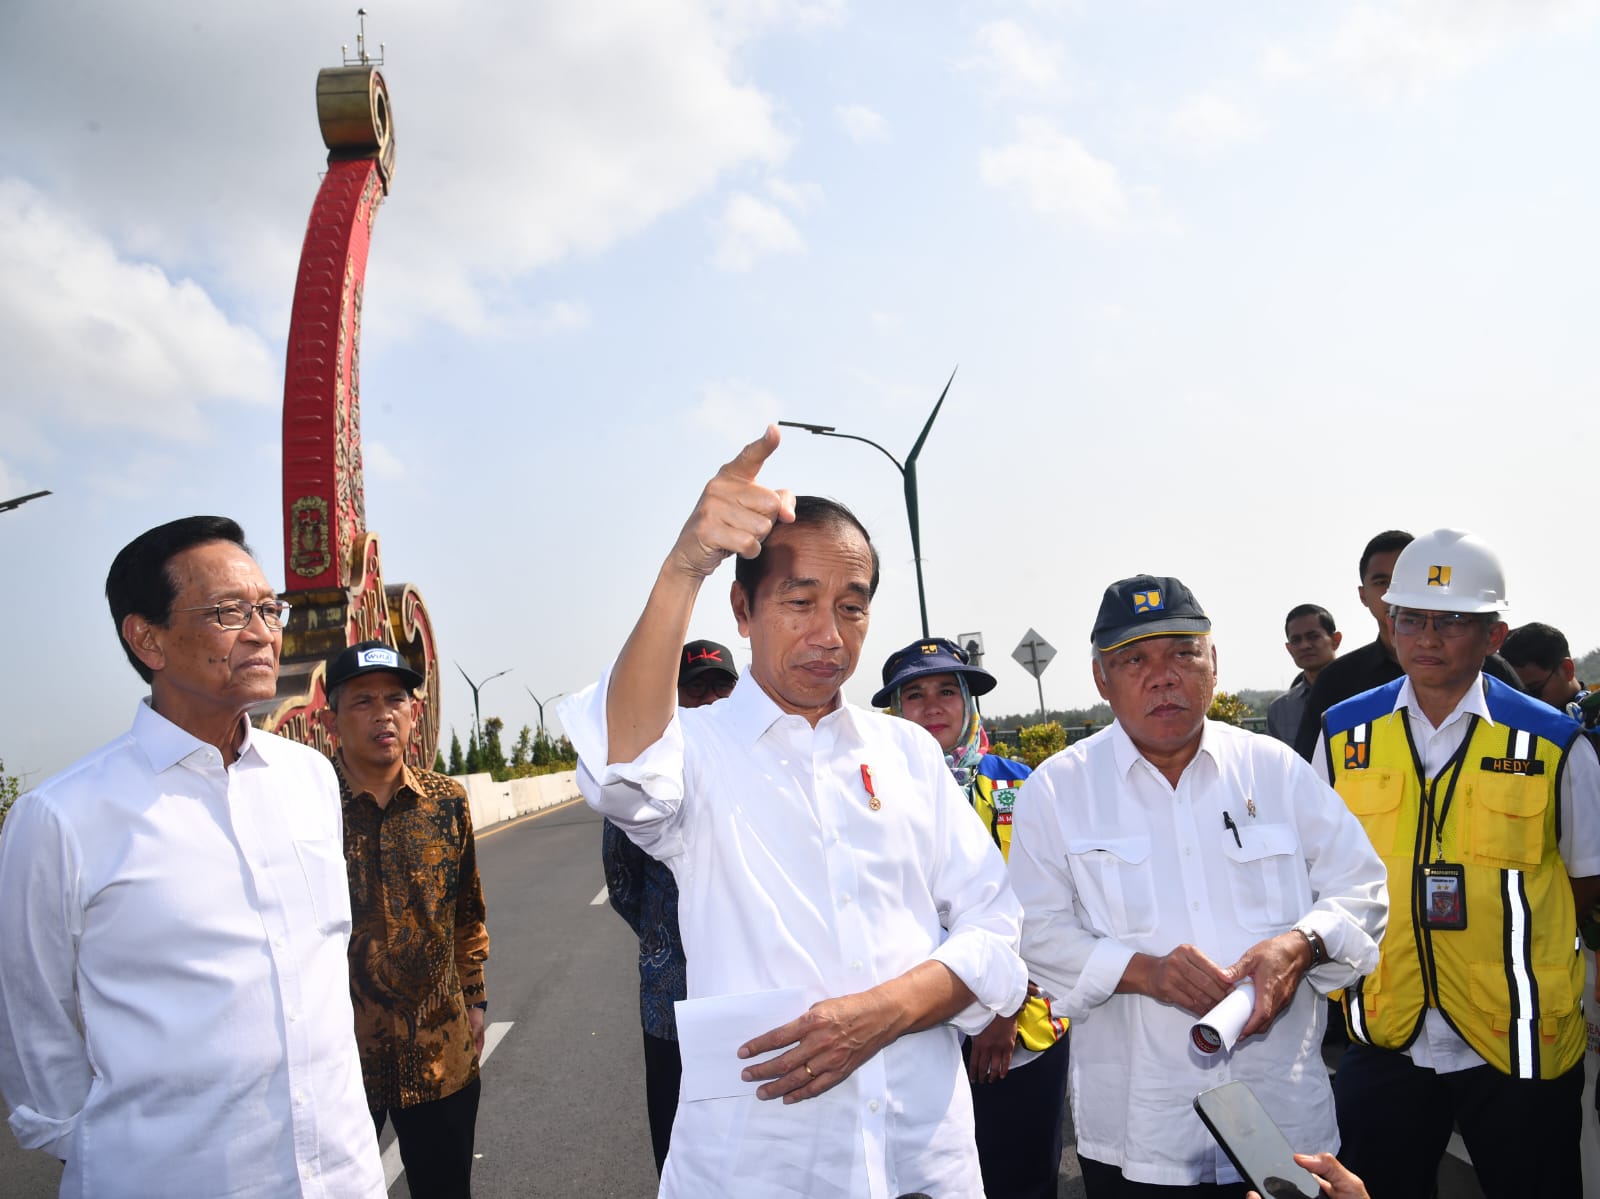 Presiden Jokowi Resmikan Jembatan Kretek 2 di Kabupaten Bantul